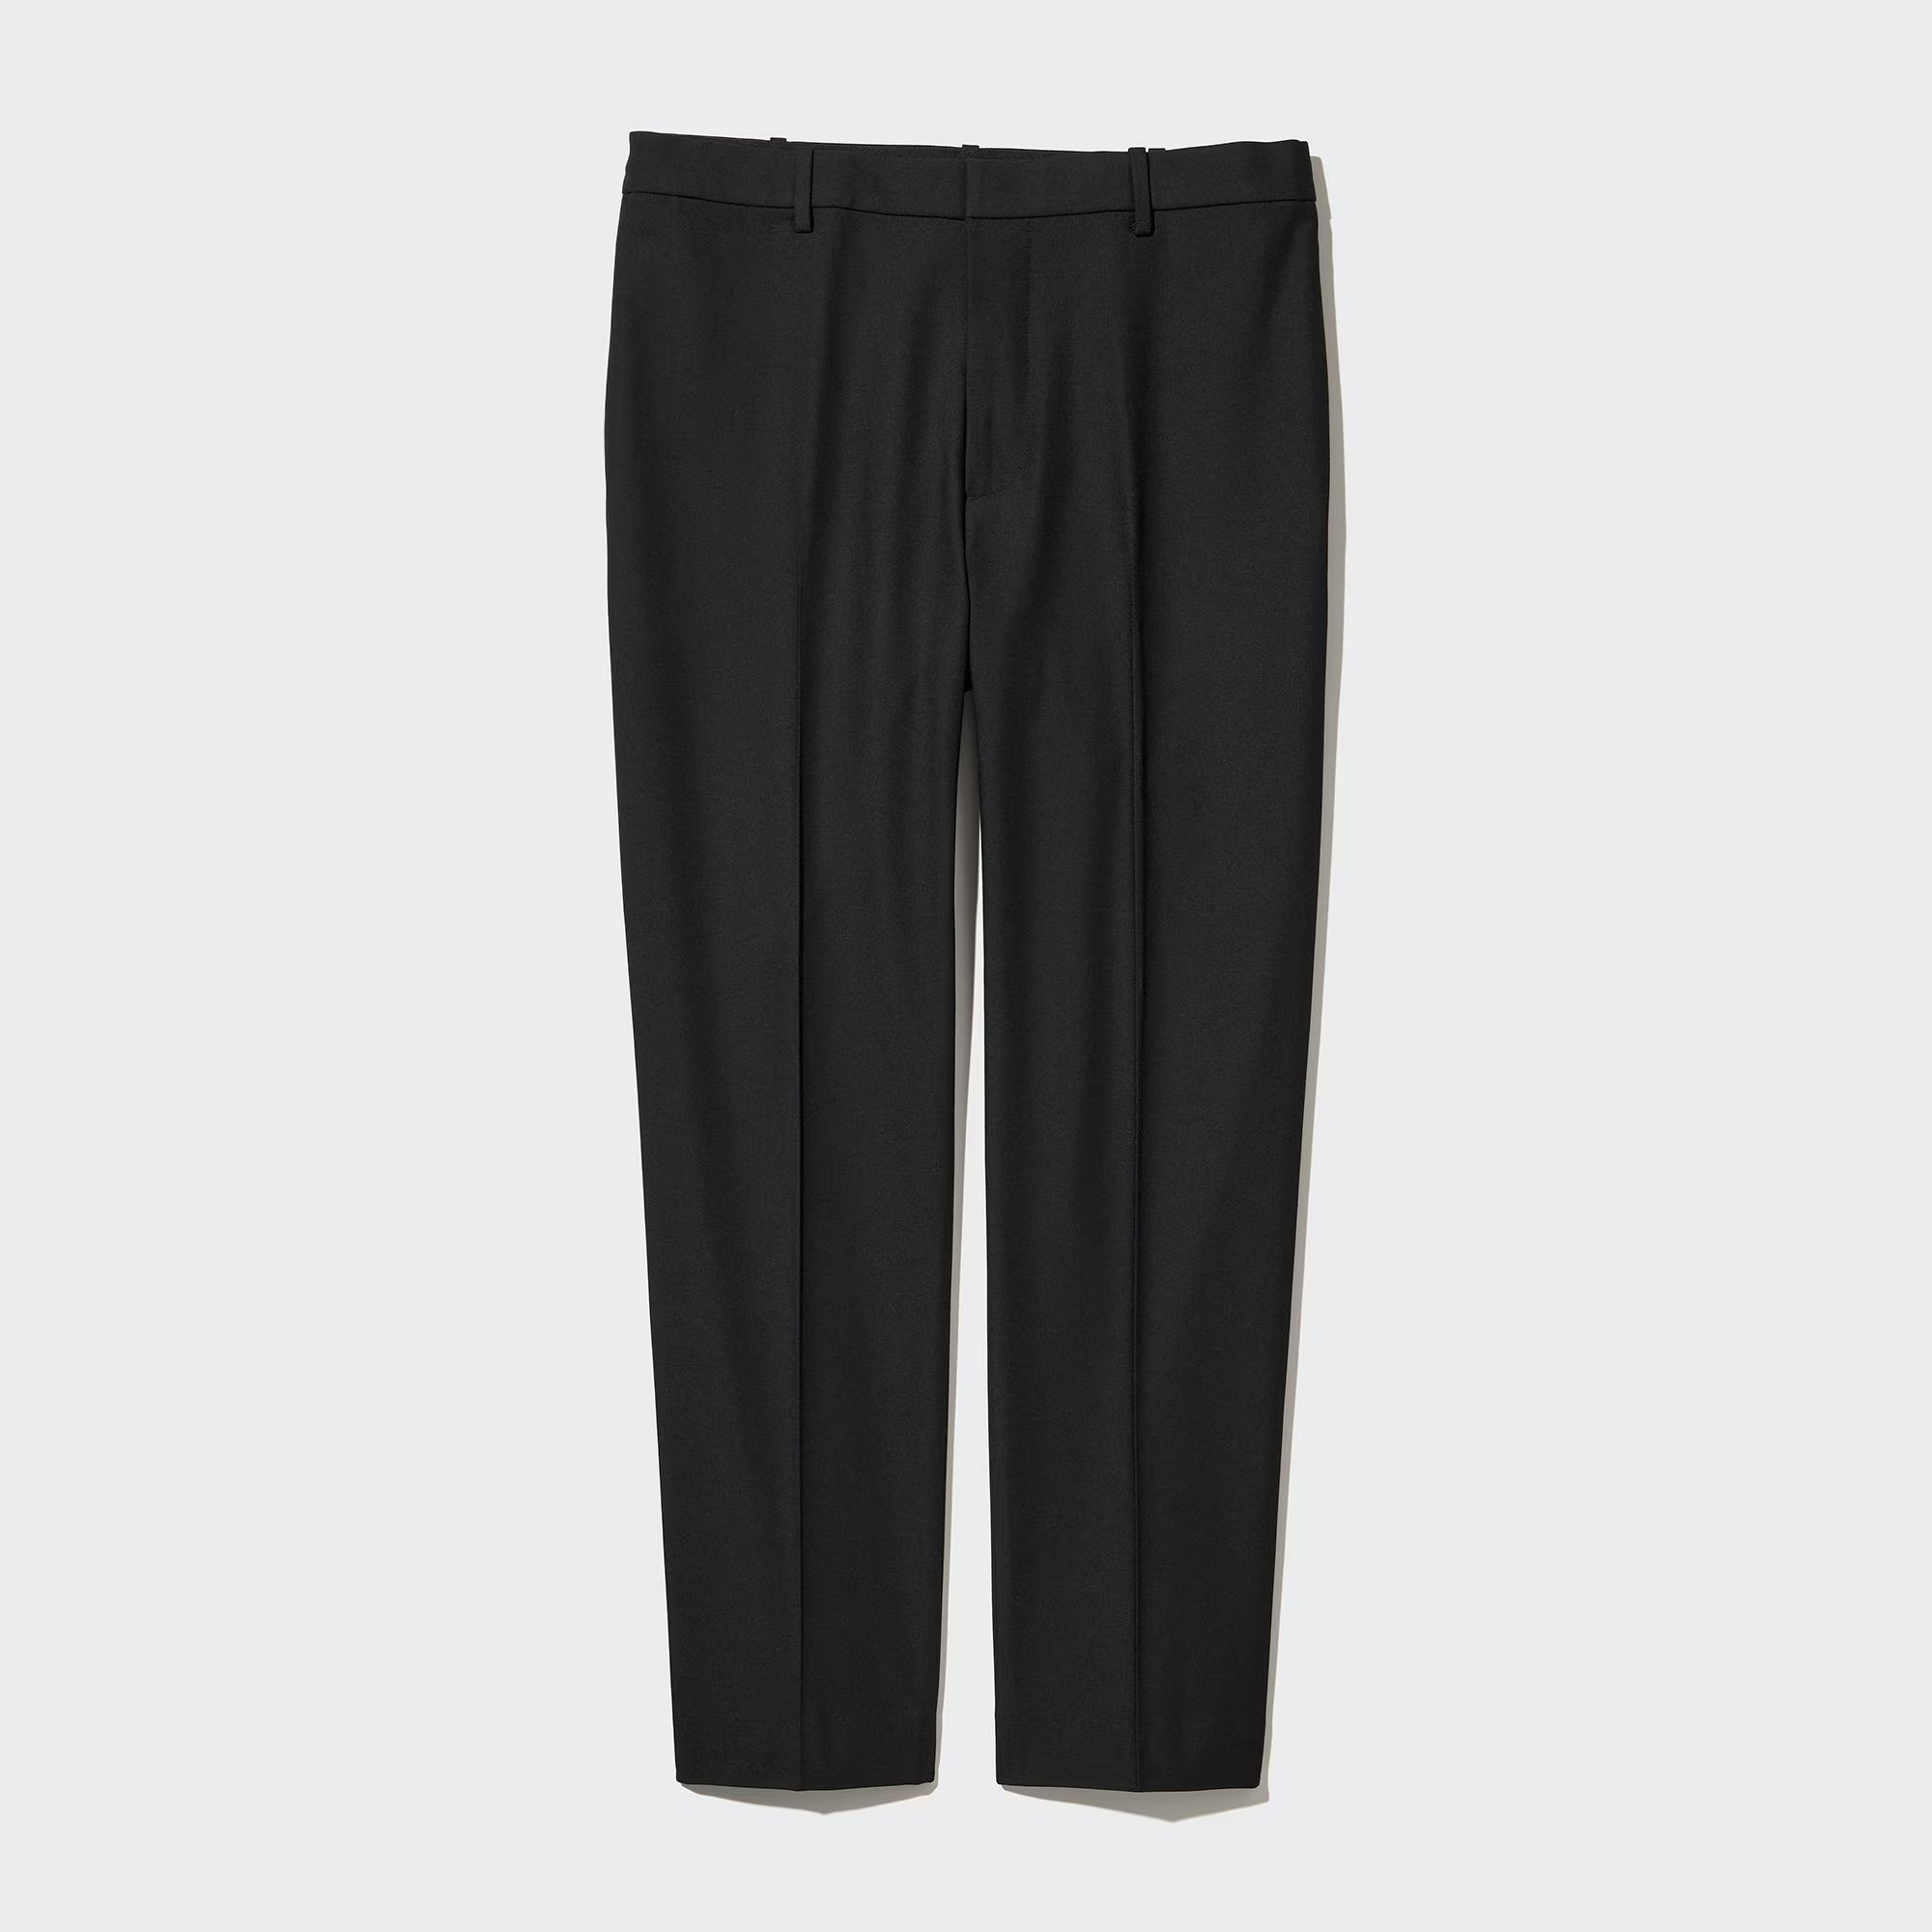 Брюки Uniqlo Smart Wool-Like Ankle Length, черный брюки uniqlo smart comfort ankle length long серый